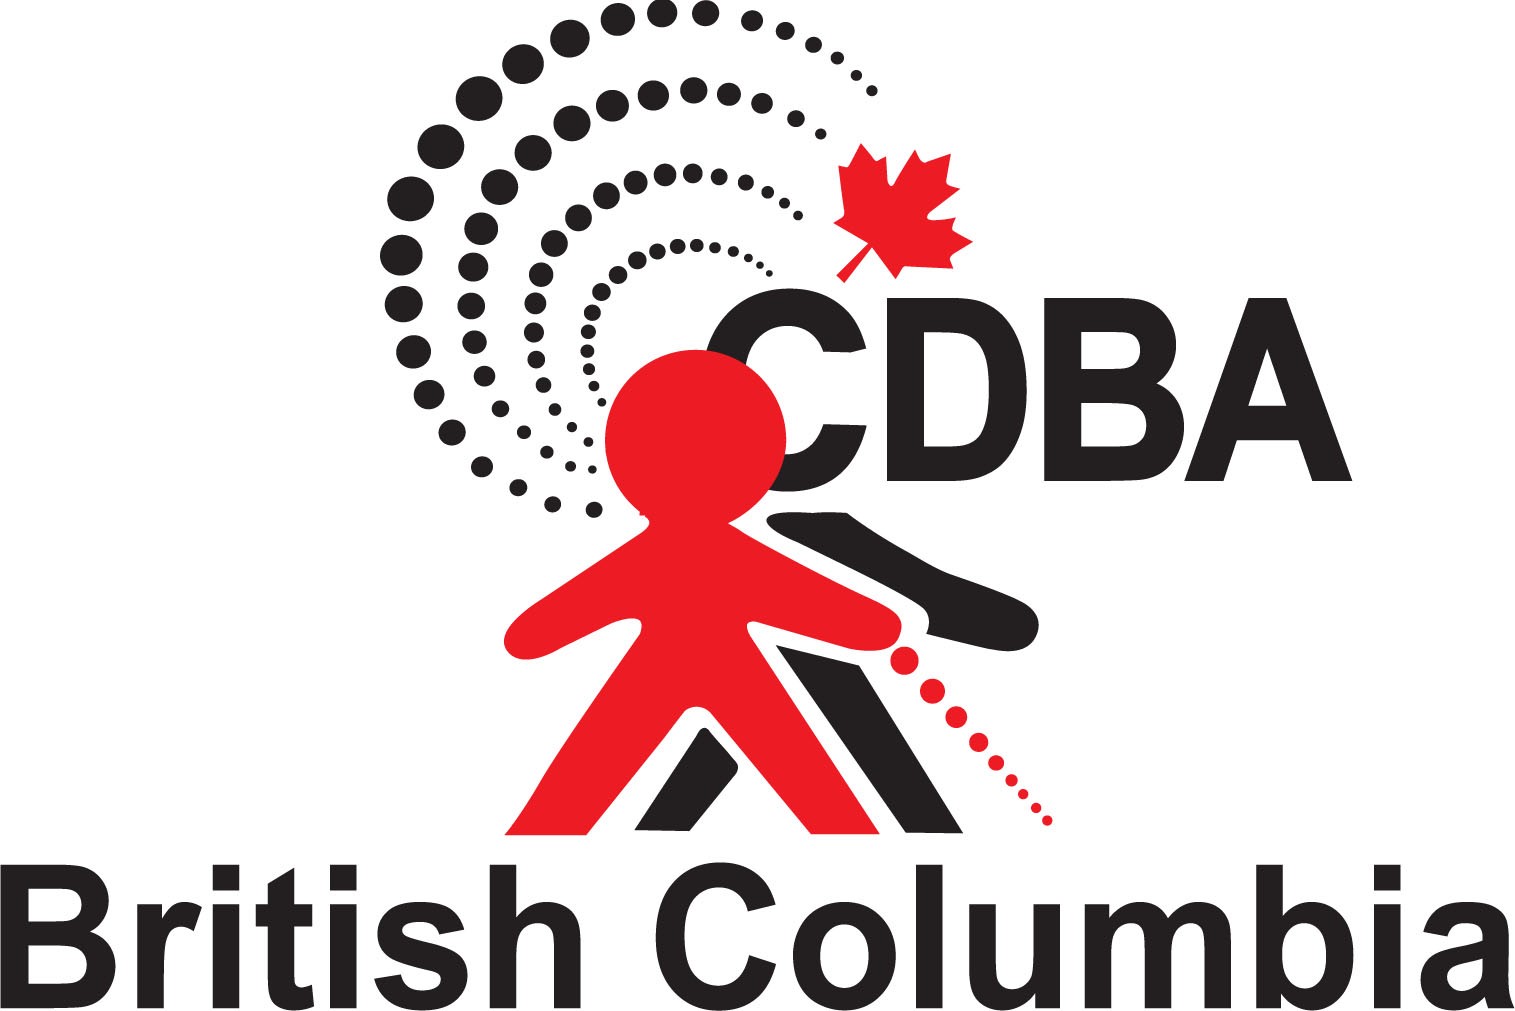 Image shows the CDBA BC chapter logo